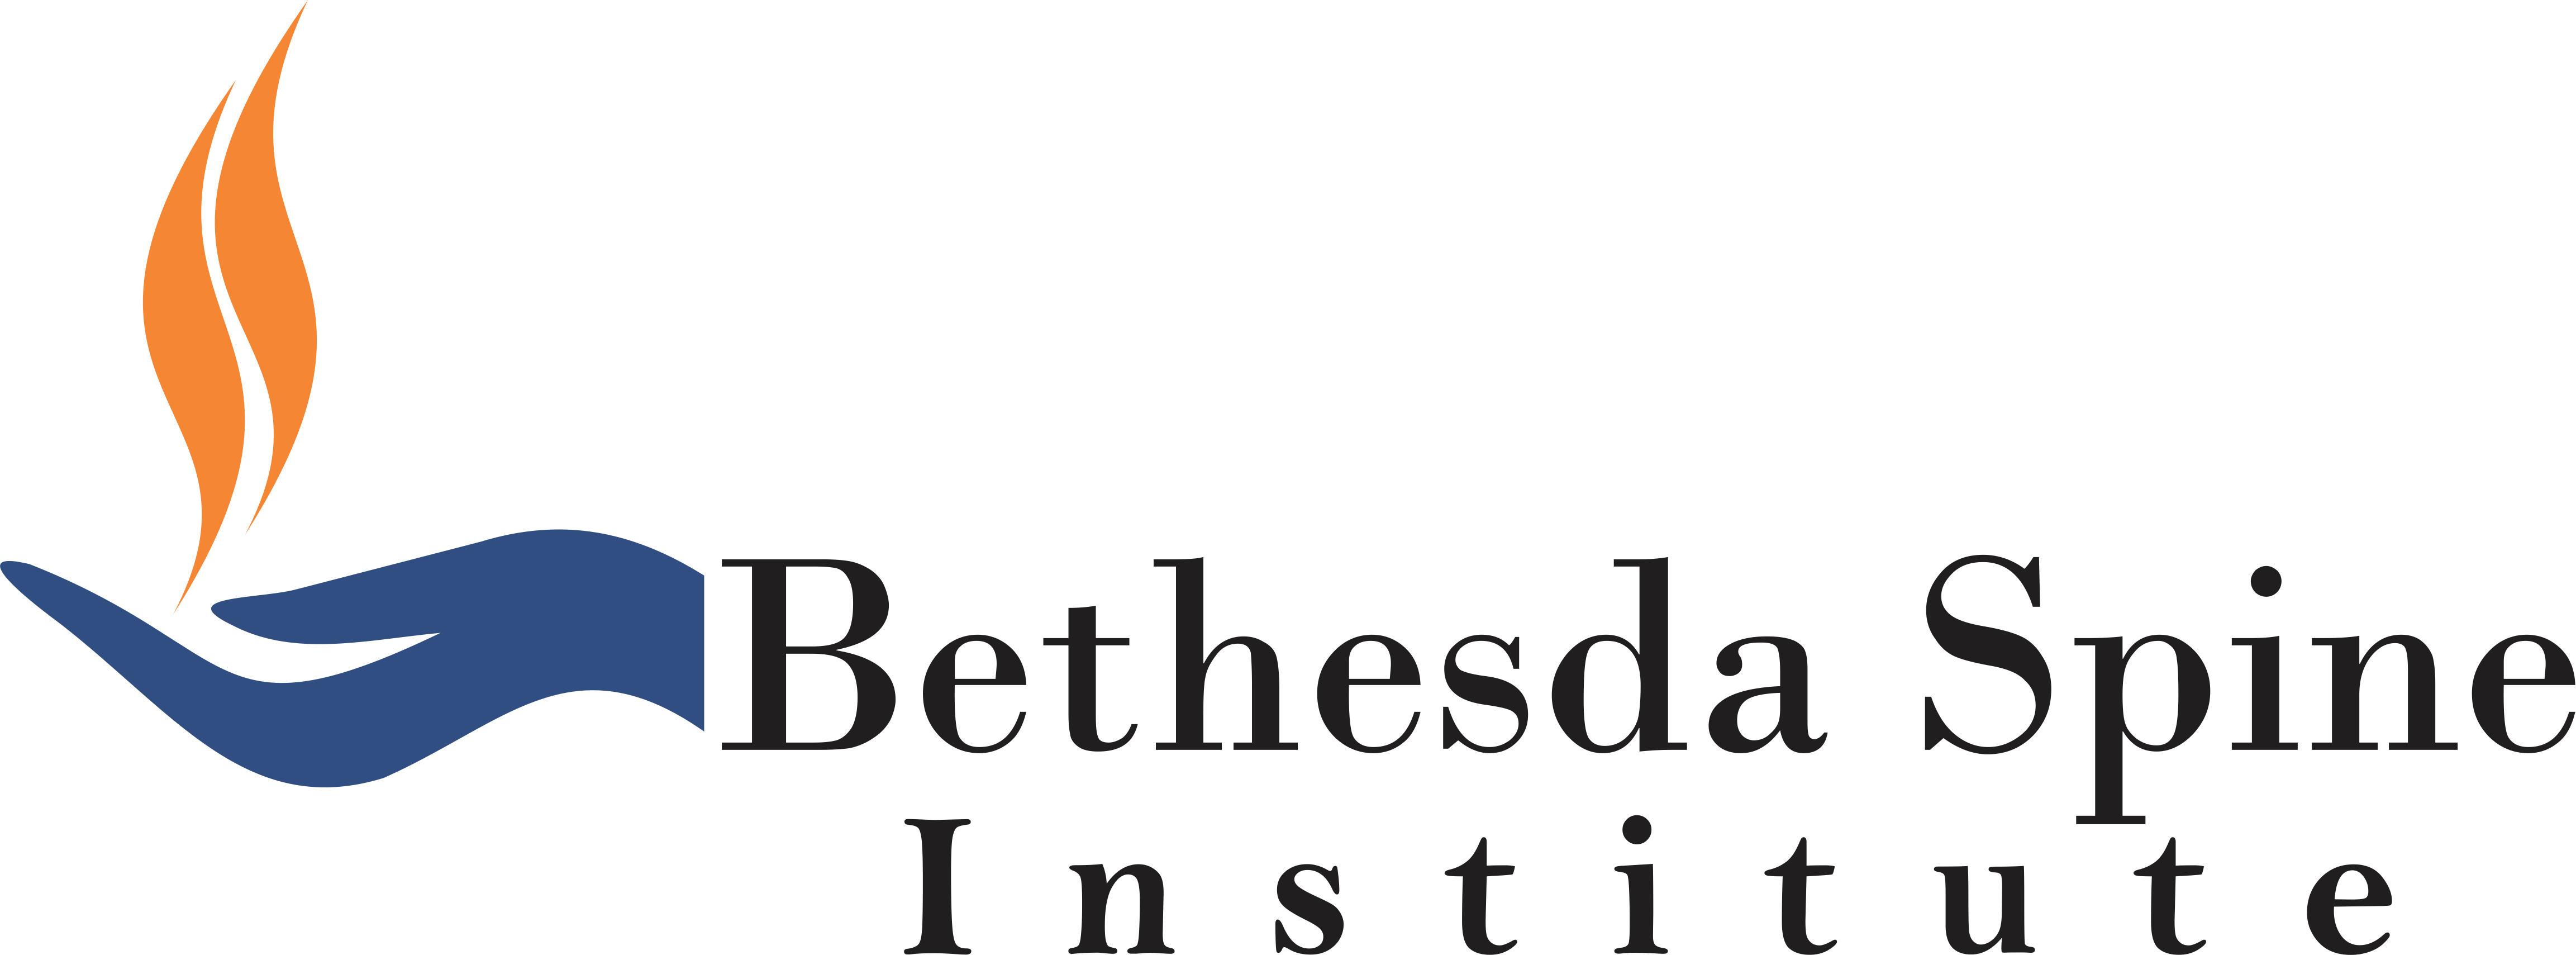 Bethesda Spine Institute